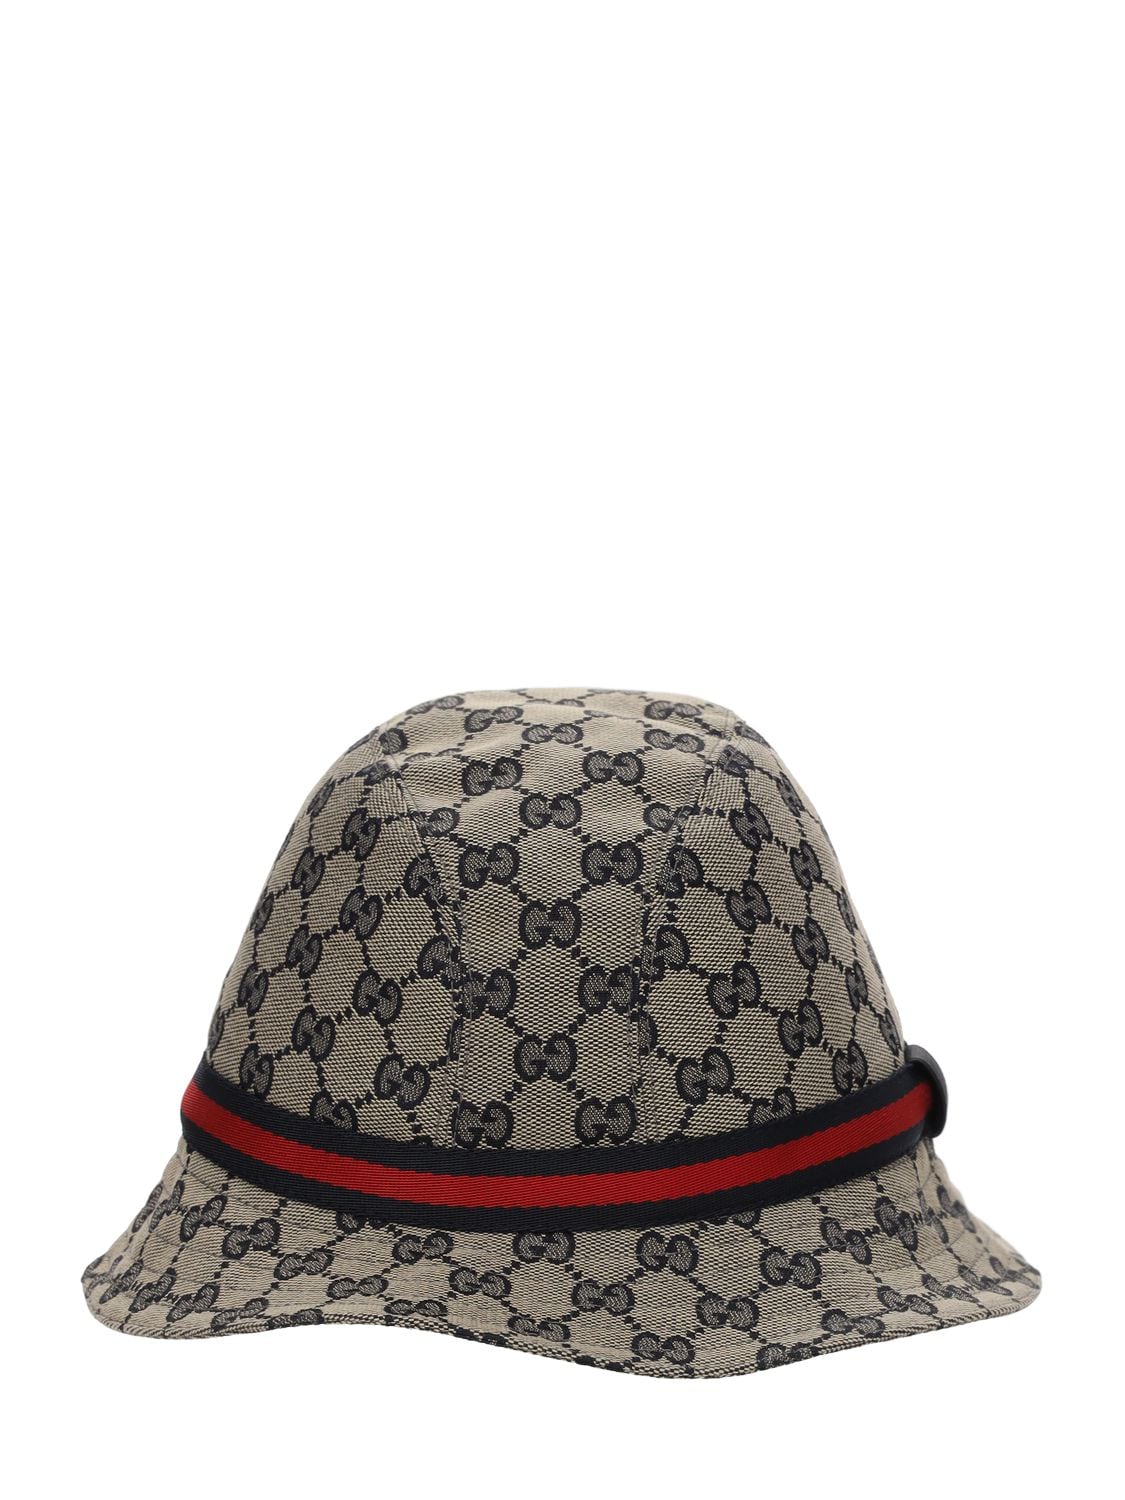 Gucci Babies' Gg Supreme Logo Blend Cotton Bucket Hat In Beige,blue